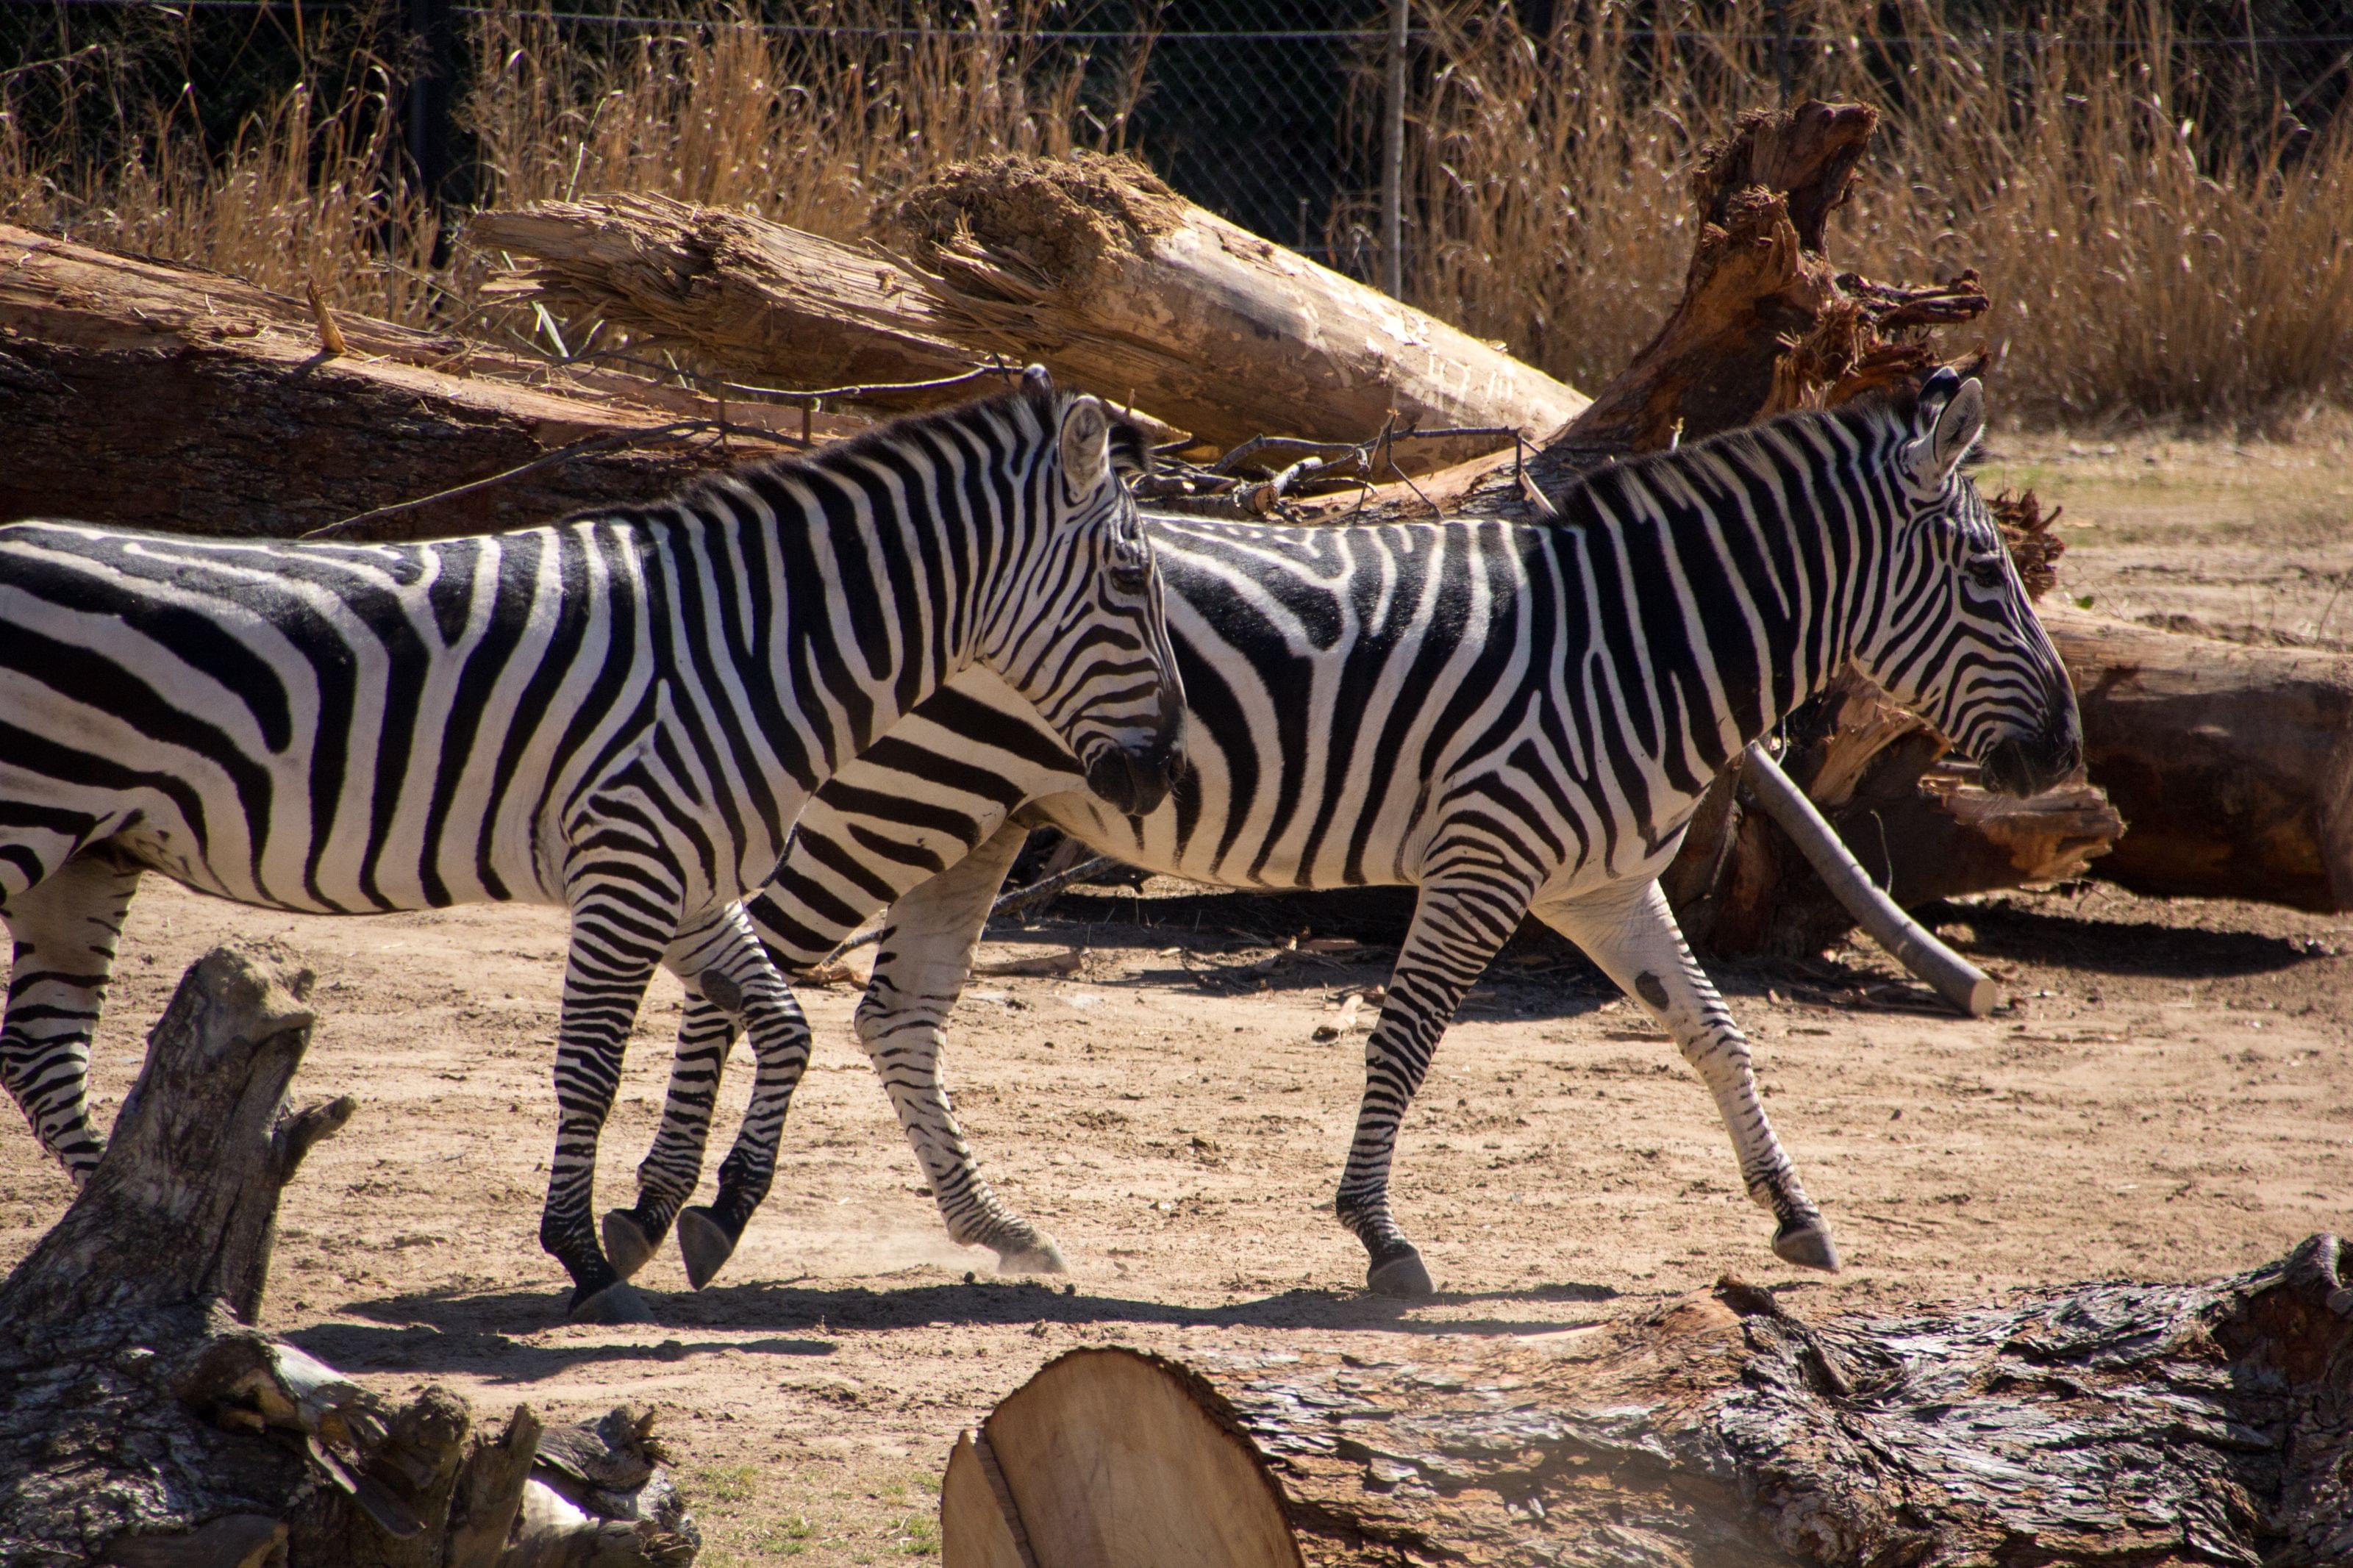 Zebra at Dallas Zoo